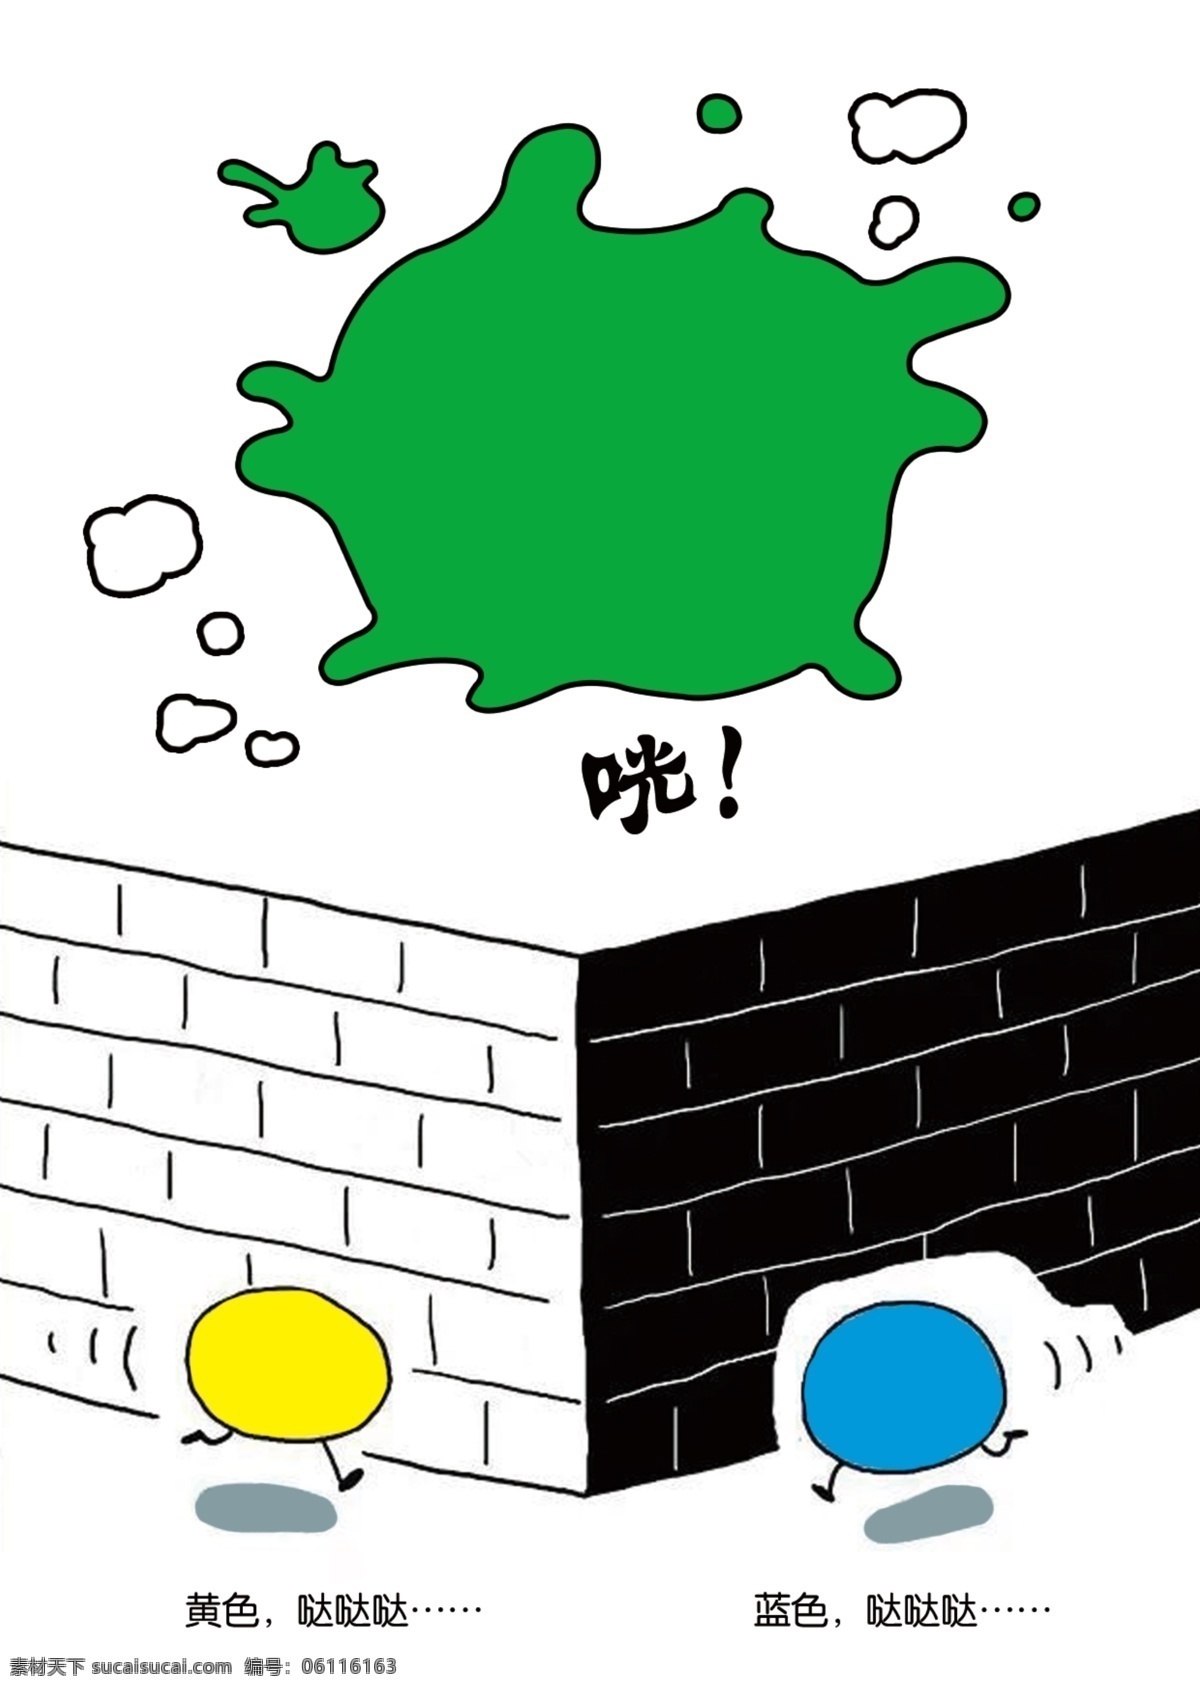 墙 咣 绿色 黄色 蓝色 跑跑镇绘画